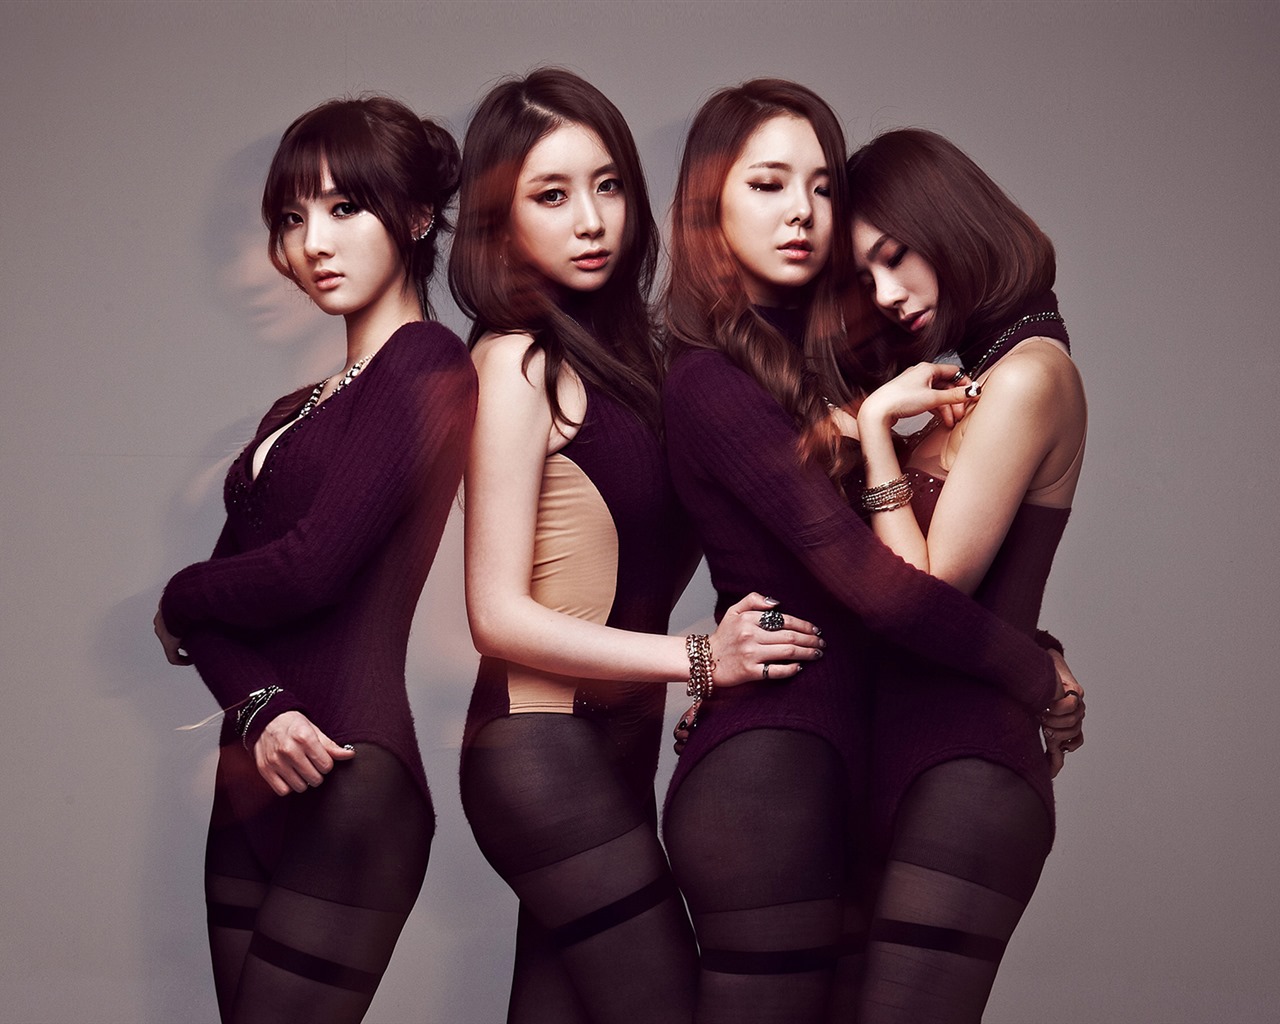 HD обои Звездная корейская музыка девушки группа #14 - 1280x1024